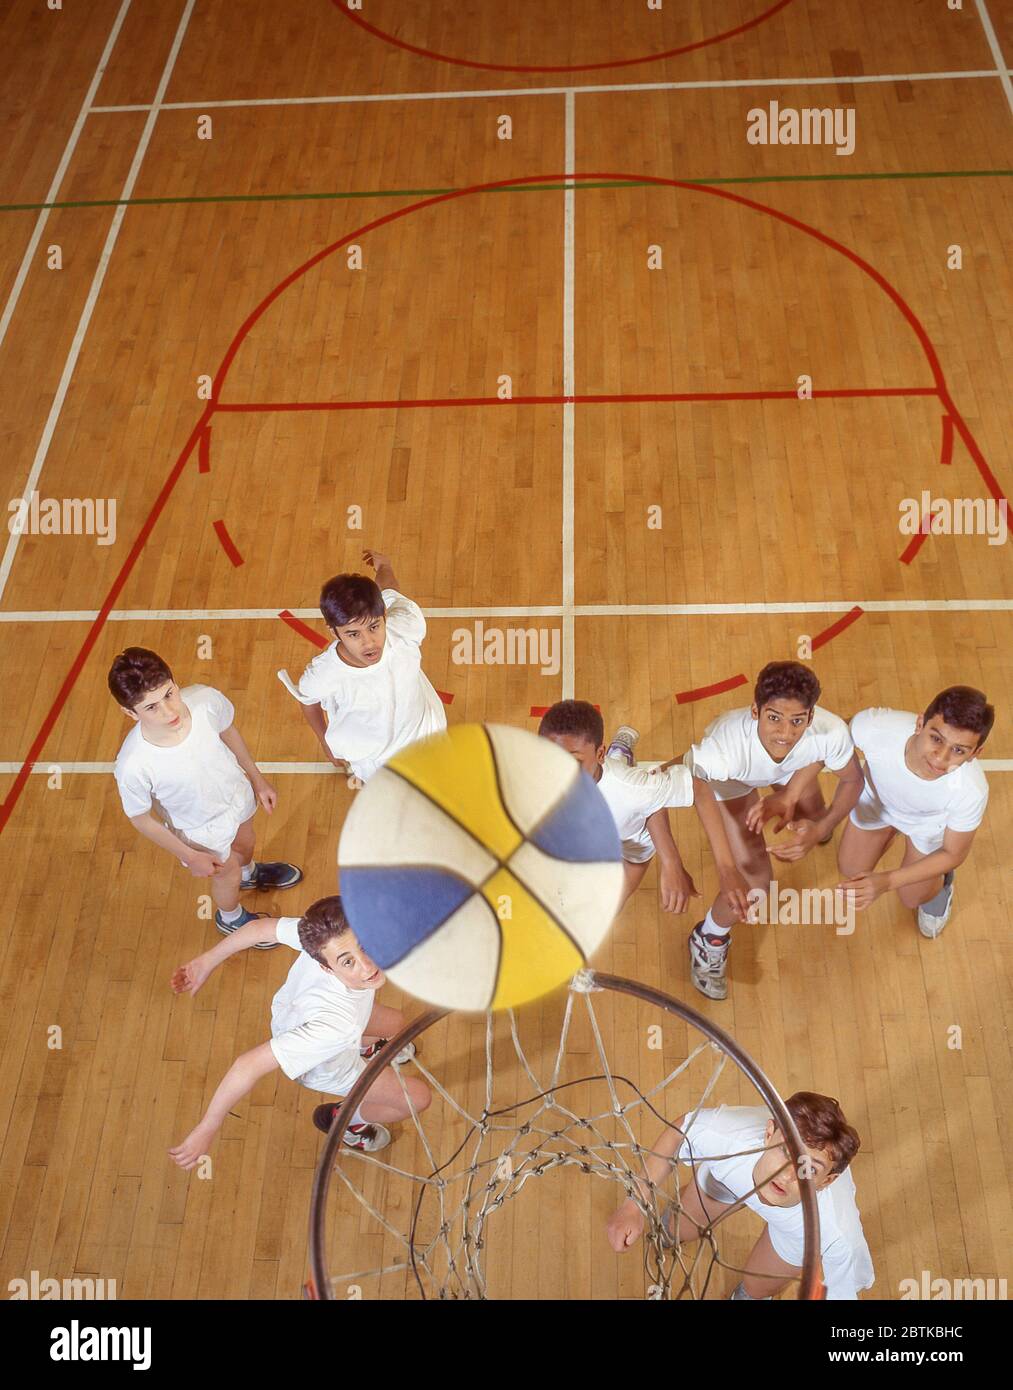 Boys playing basketball in school gym, Surrey, England, United Kingdom Stock Photo